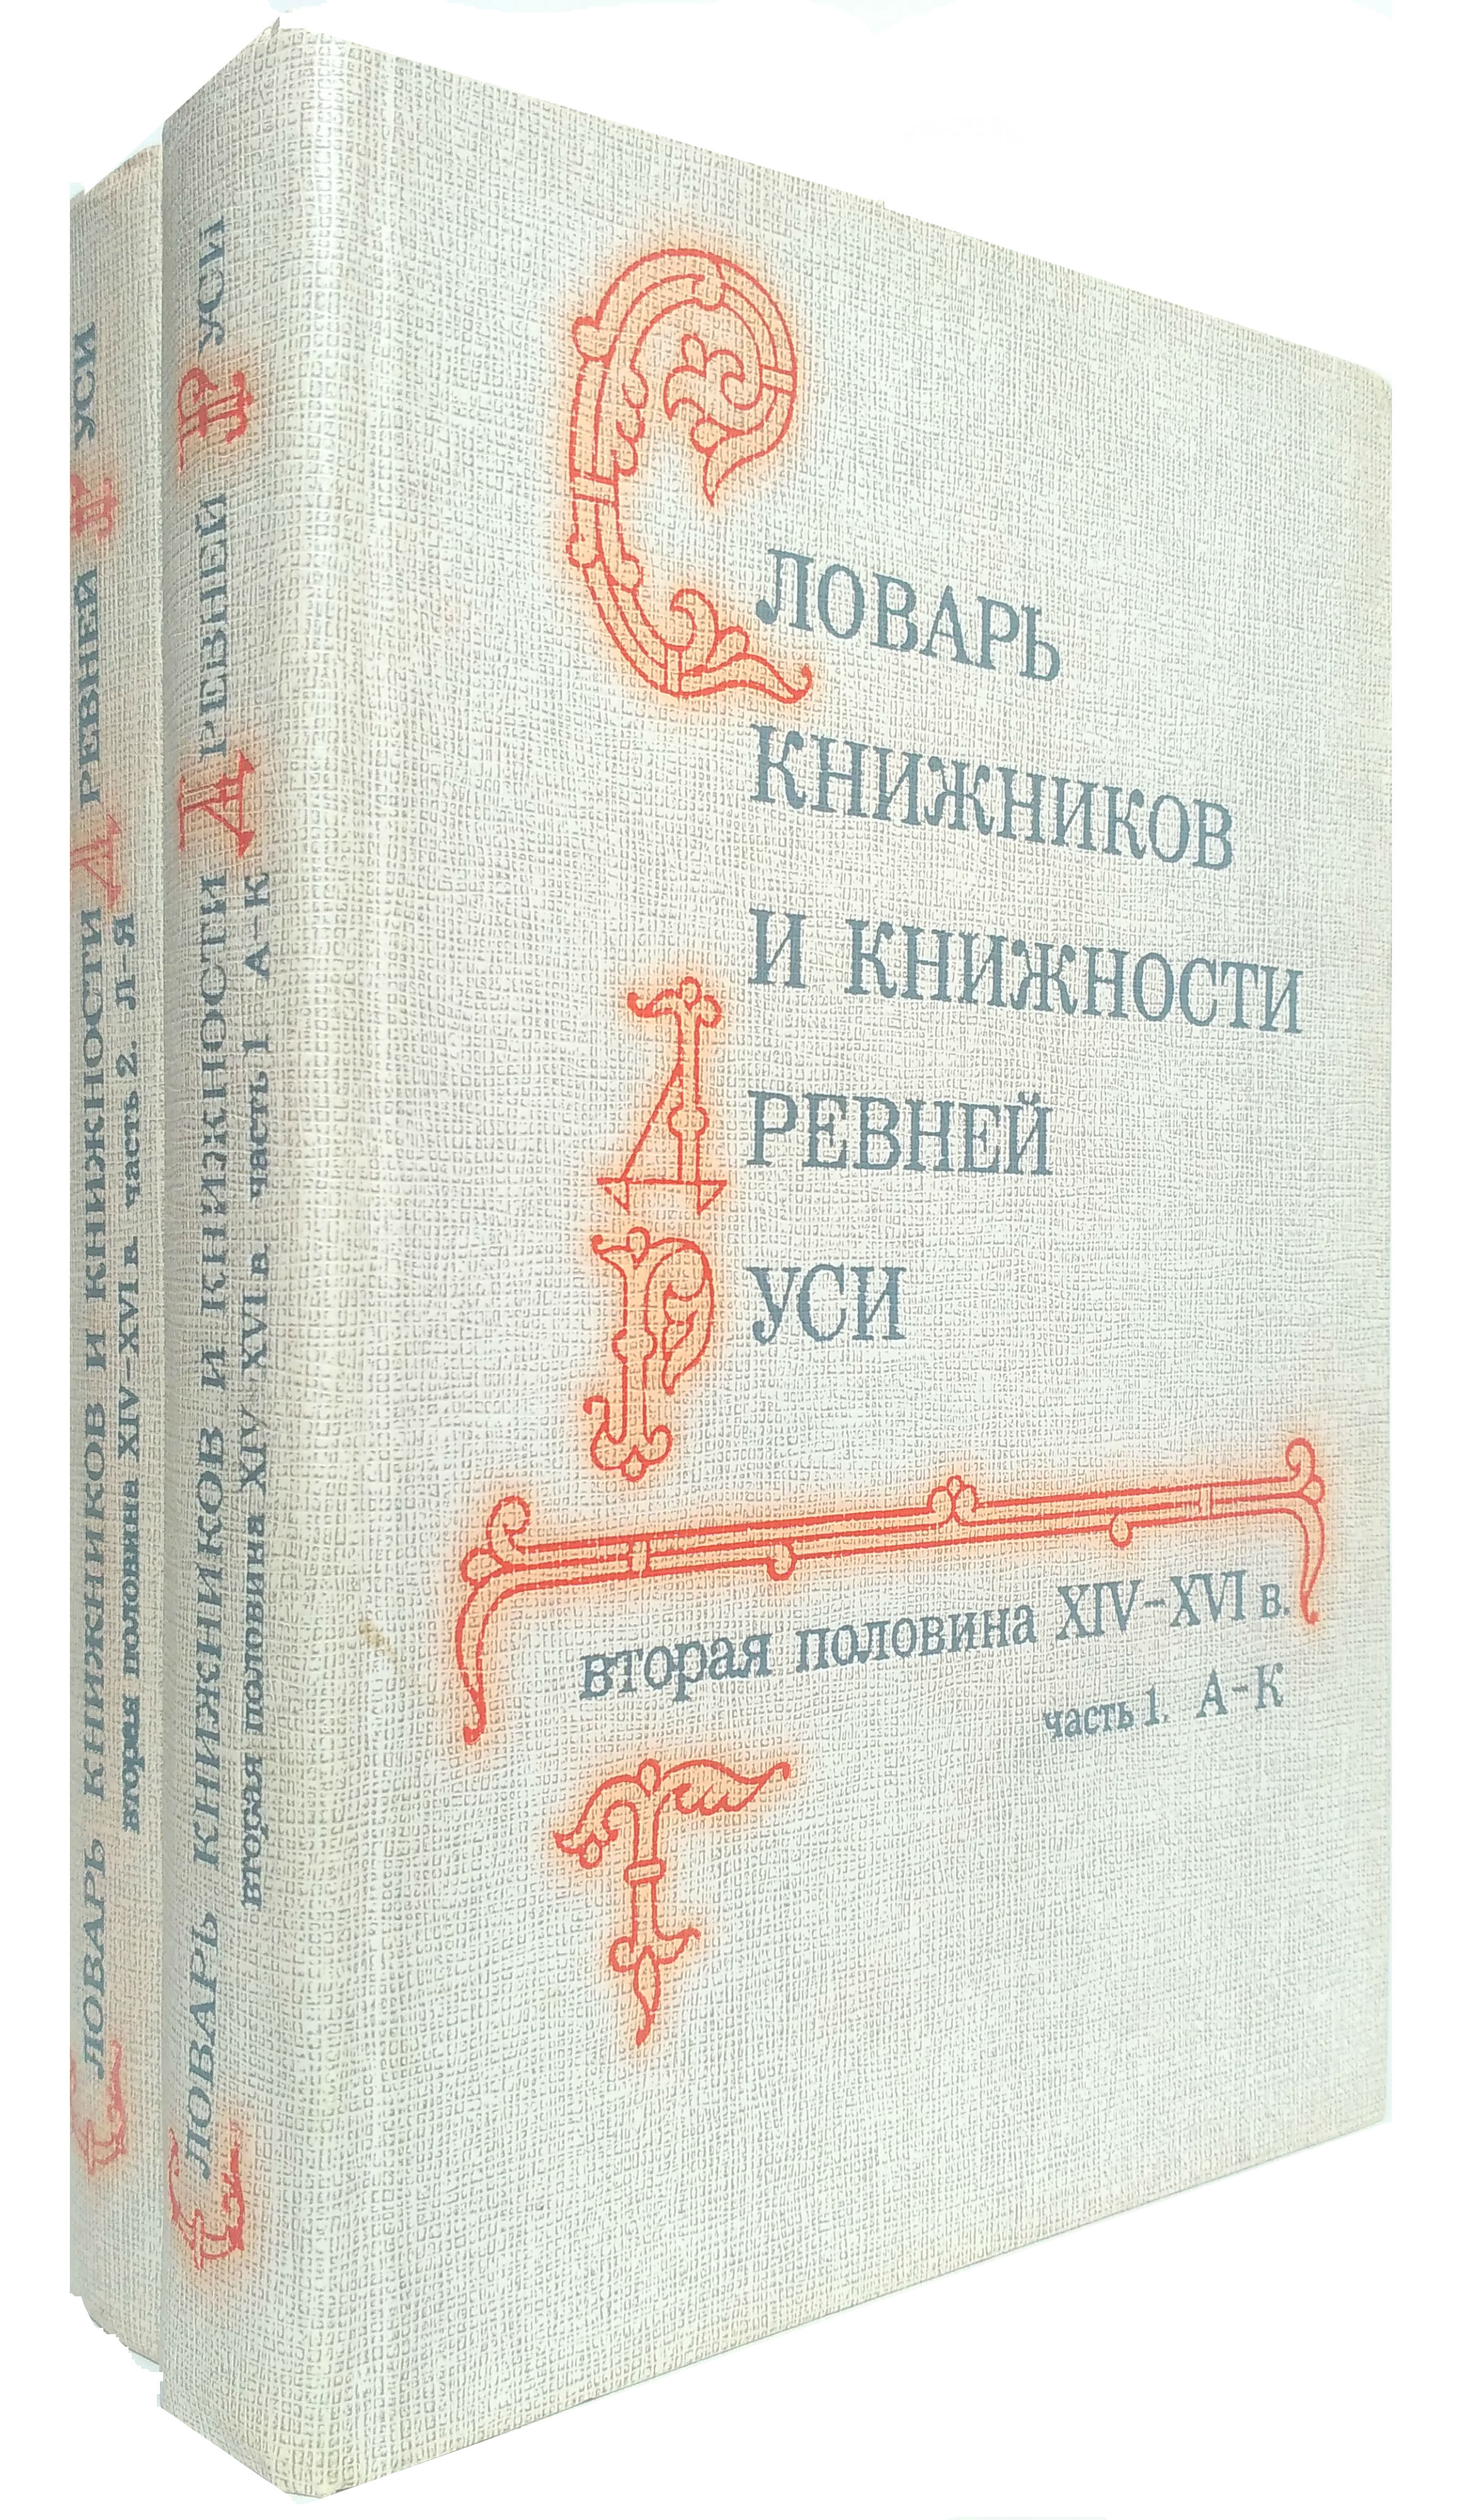 Книжник словарь